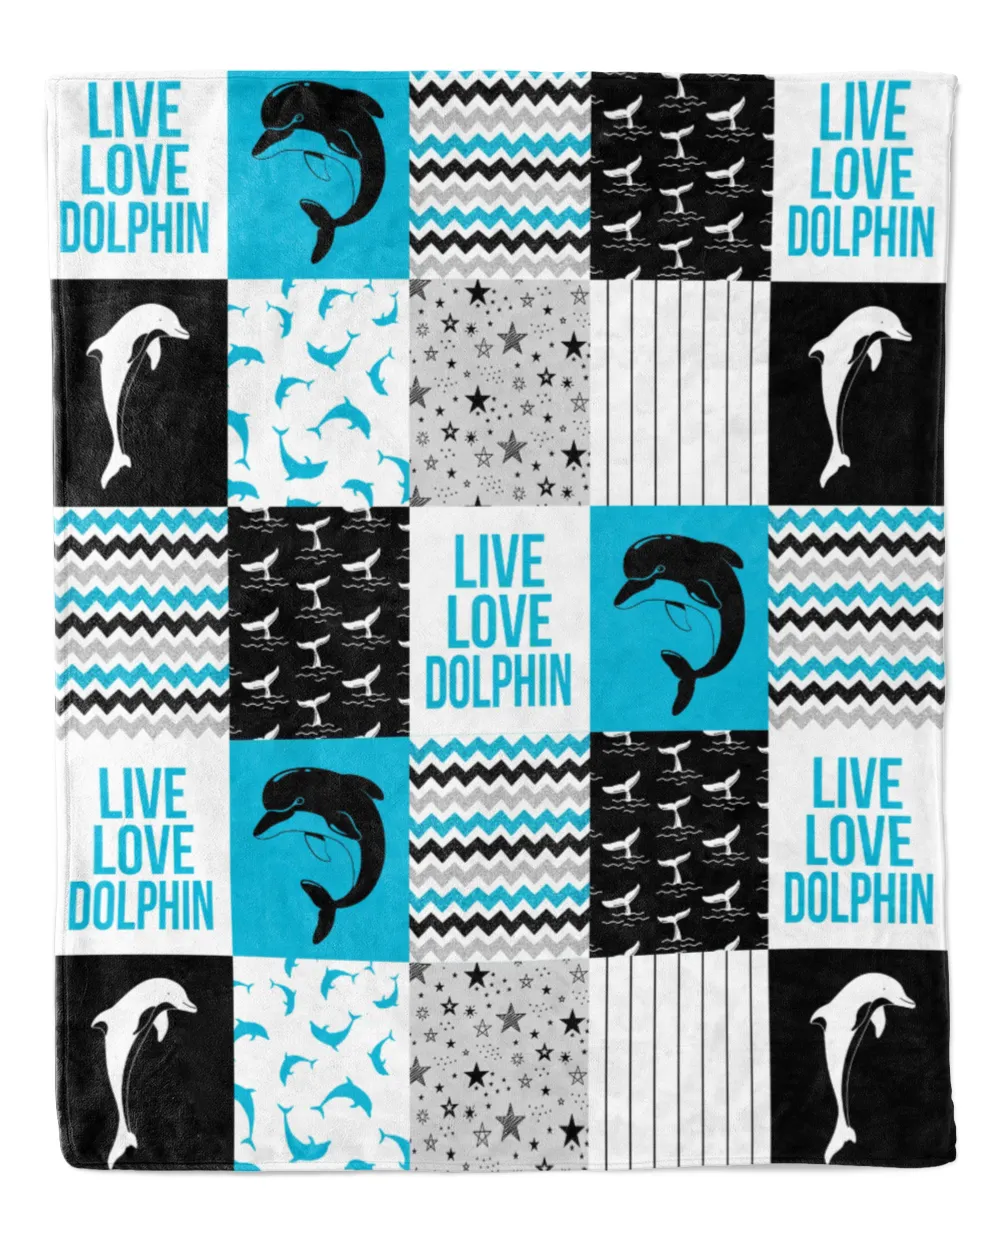 Dolphin shape pattern